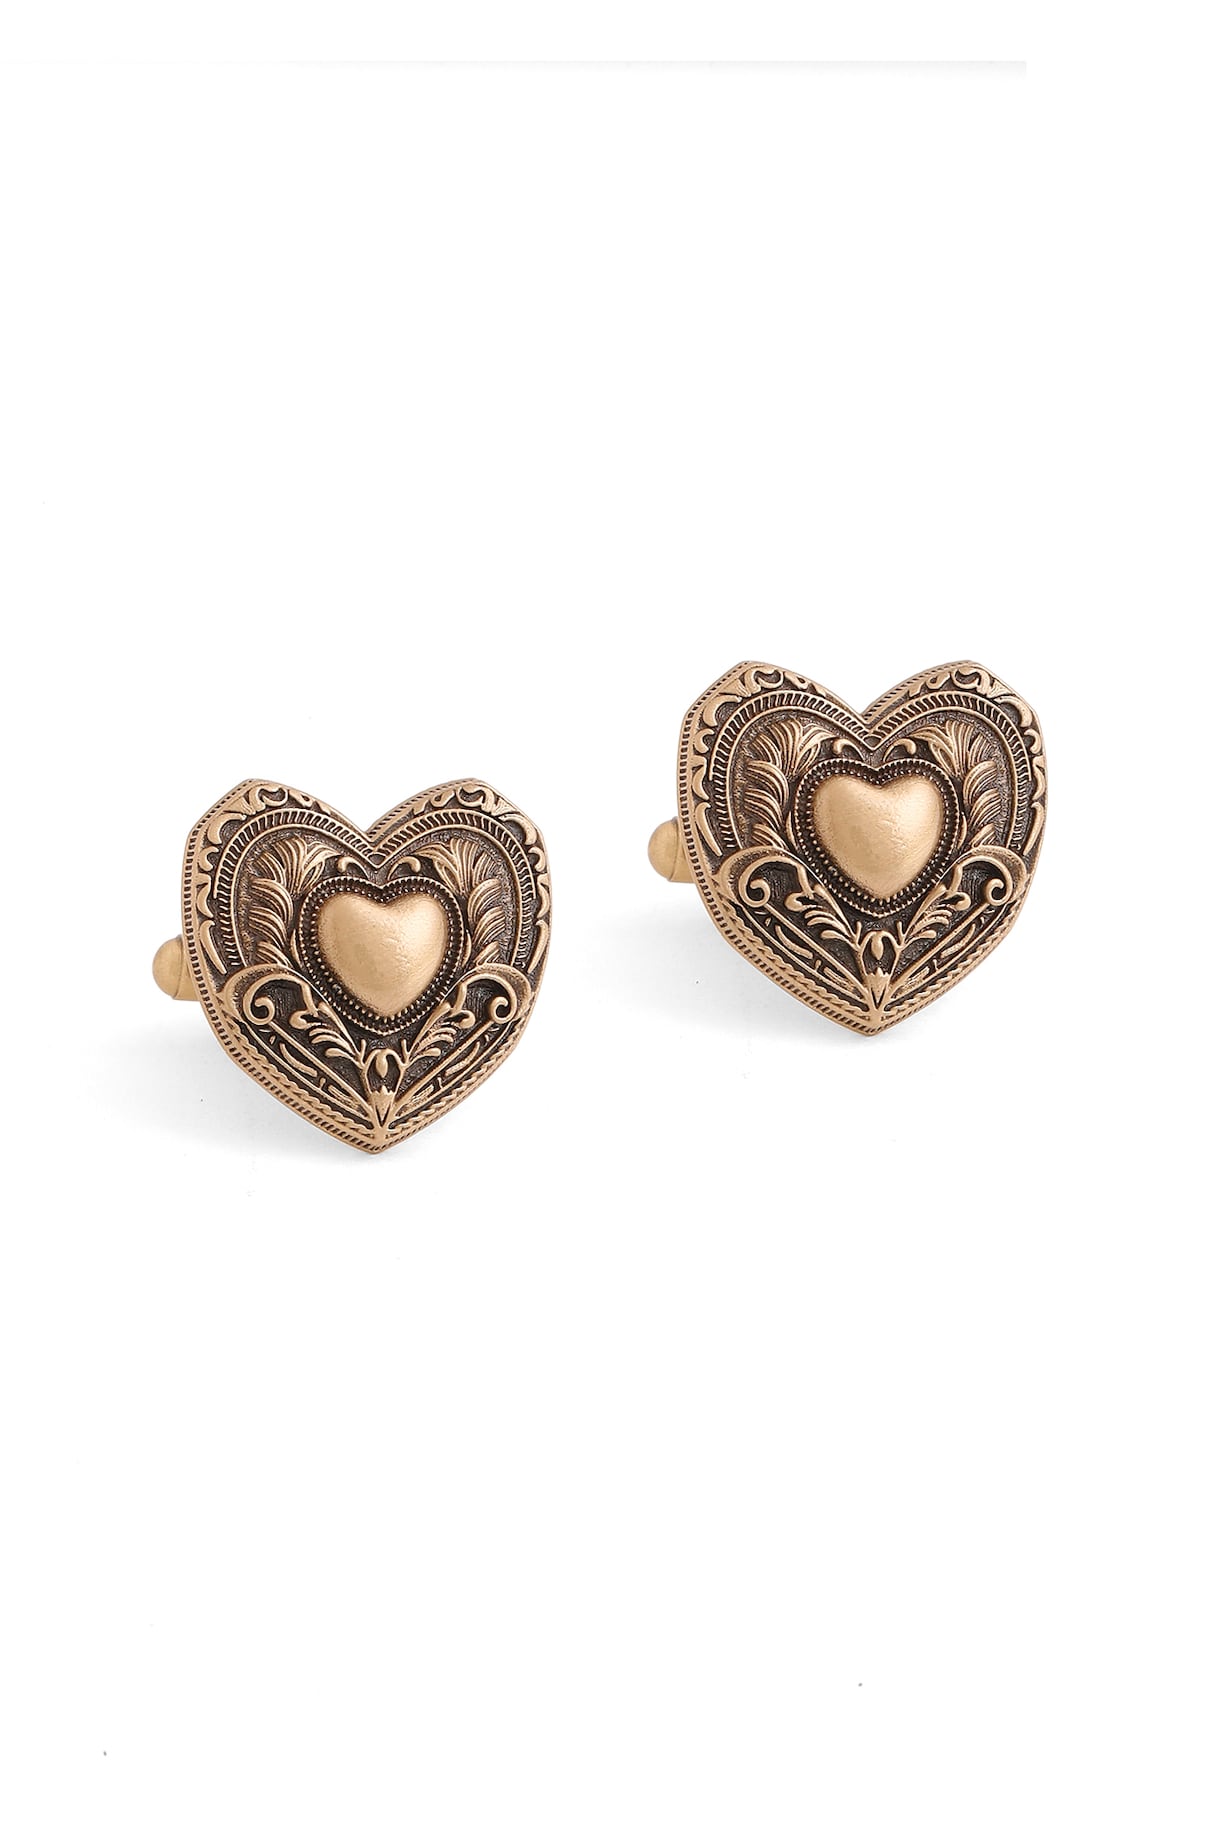 Antique Gold Brass Heart Cufflinks by Cosa Nostraa